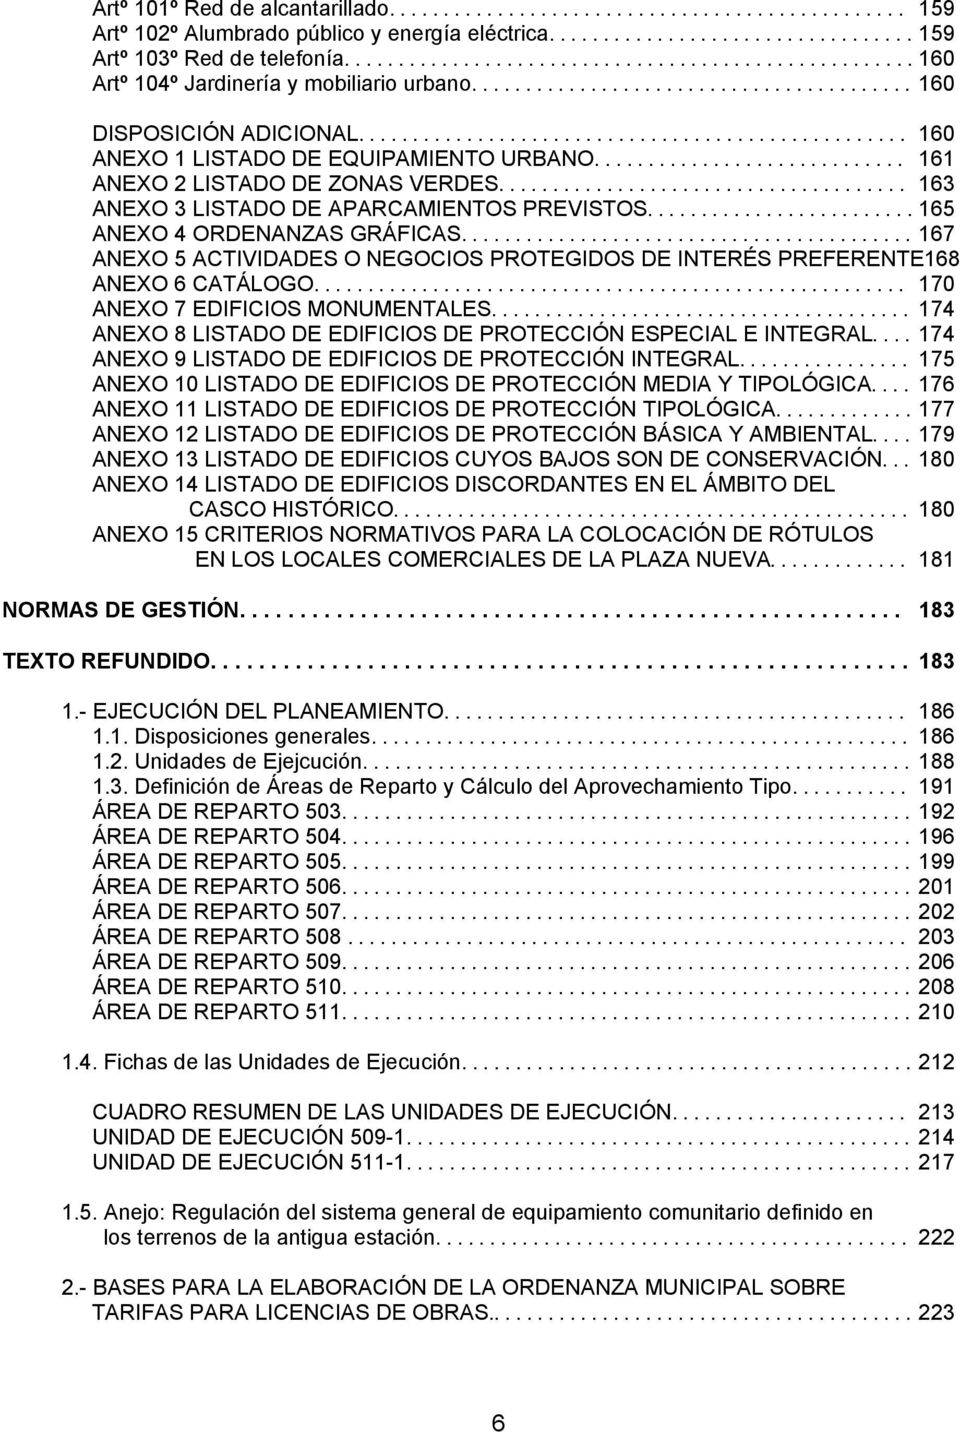 .. 167 ANEXO 5 ACTIVIDADES O NEGOCIOS PROTEGIDOS DE INTERÉS PREFERENTE168 ANEXO 6 CATÁLOGO... 170 ANEXO 7 EDIFICIOS MONUMENTALES... 174 ANEXO 8 LISTADO DE EDIFICIOS DE PROTECCIÓN ESPECIAL E INTEGRAL.